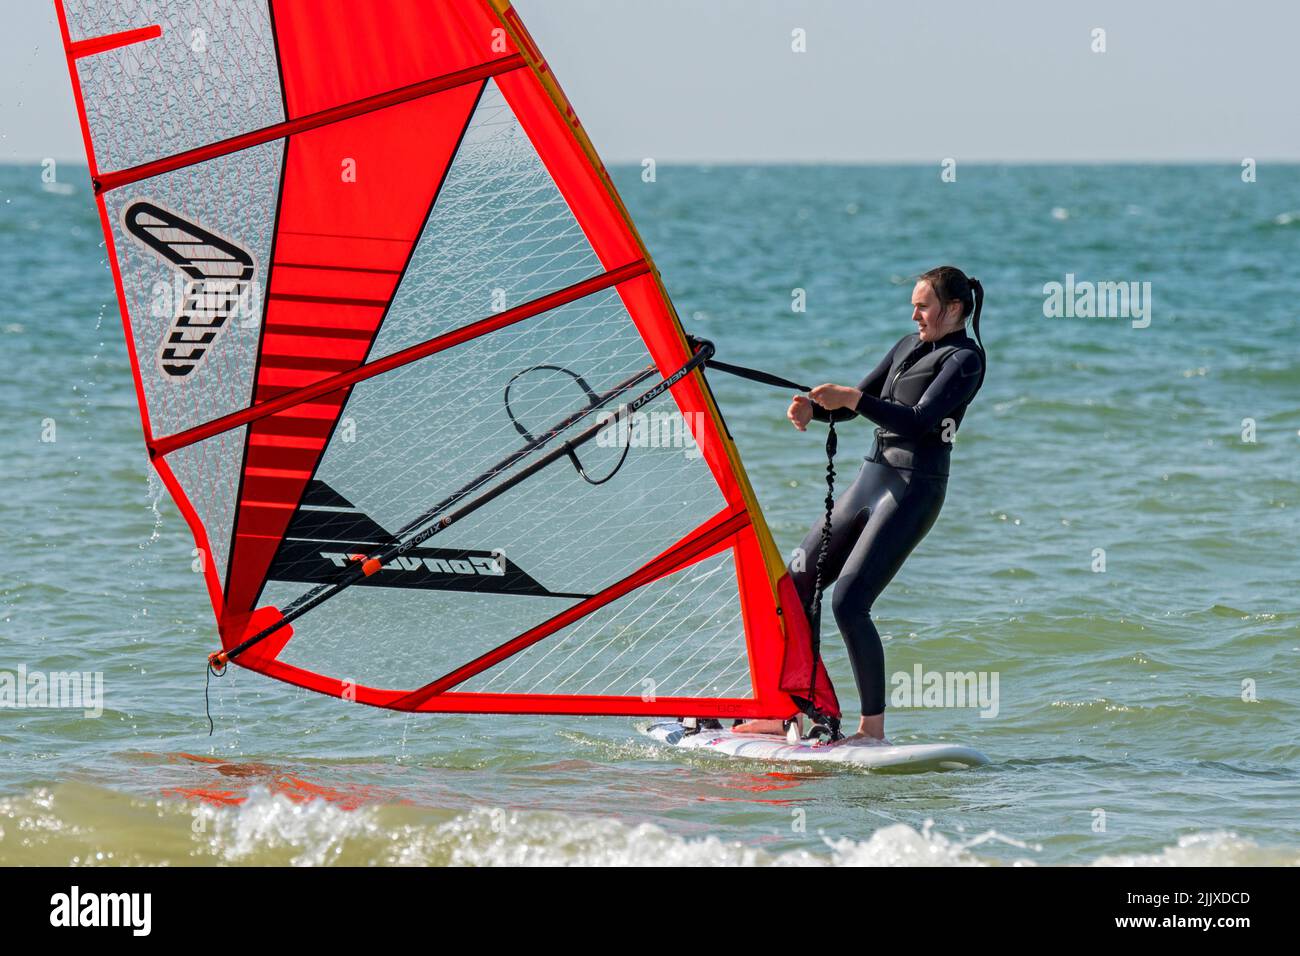 Niña / mujer windsurfista de recreo en traje negro practicando windsurf clásico y haciendo vela en el mar Foto de stock